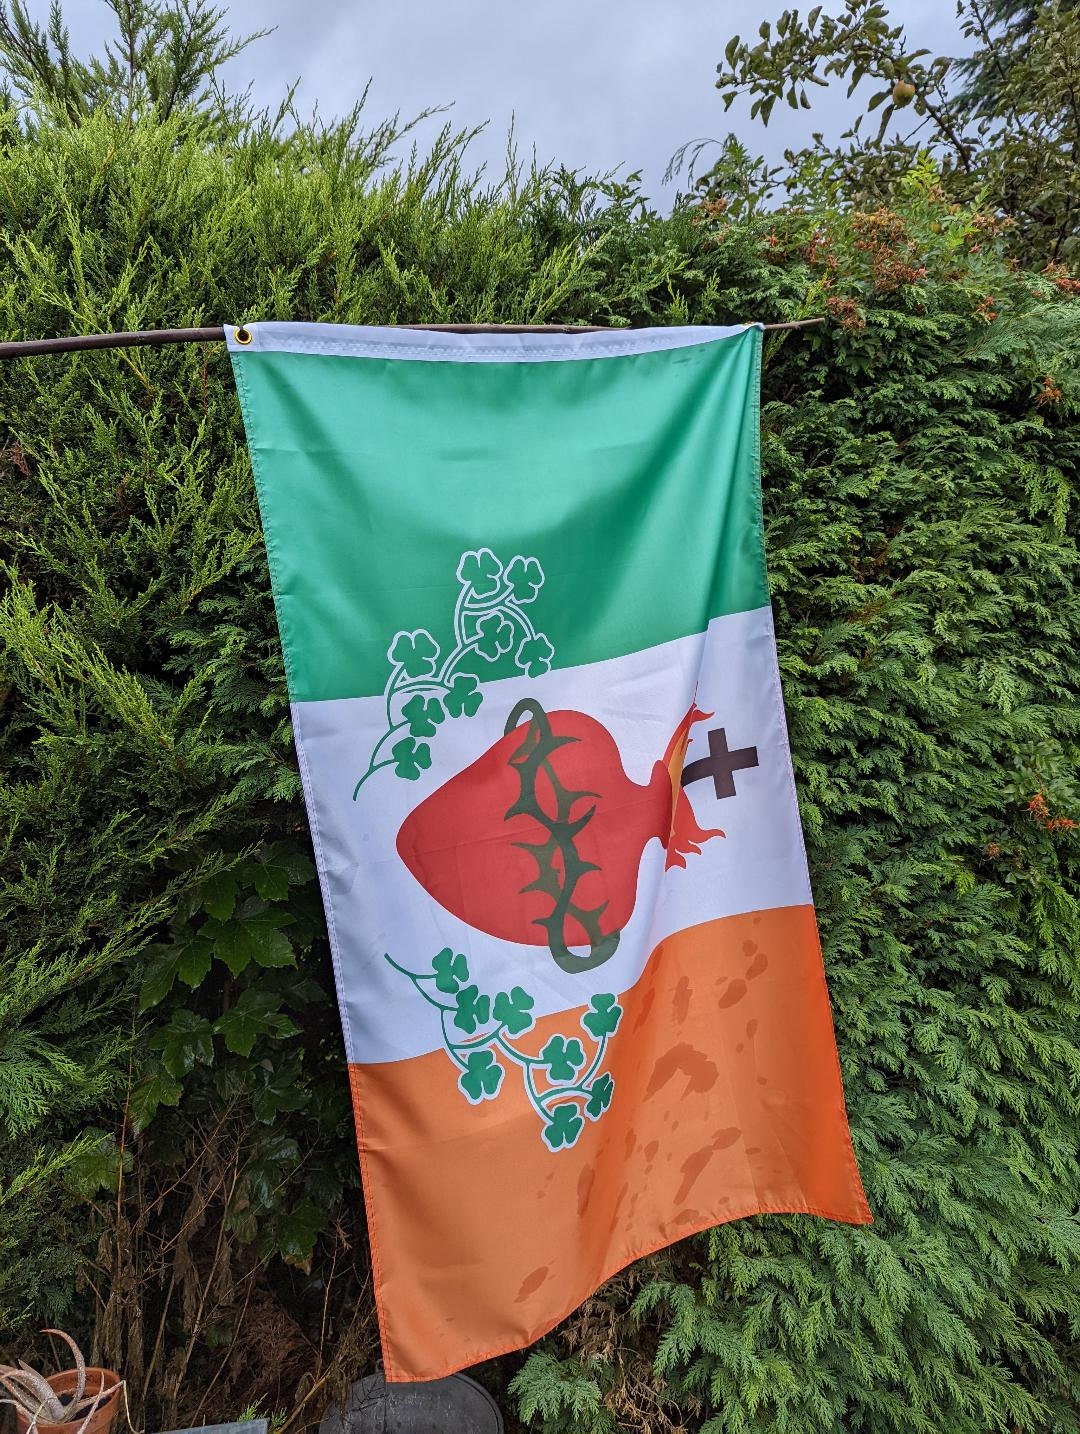 Irish Catholic Patriotic flag with Sacred Heart of Jesus, Eire, Ireland